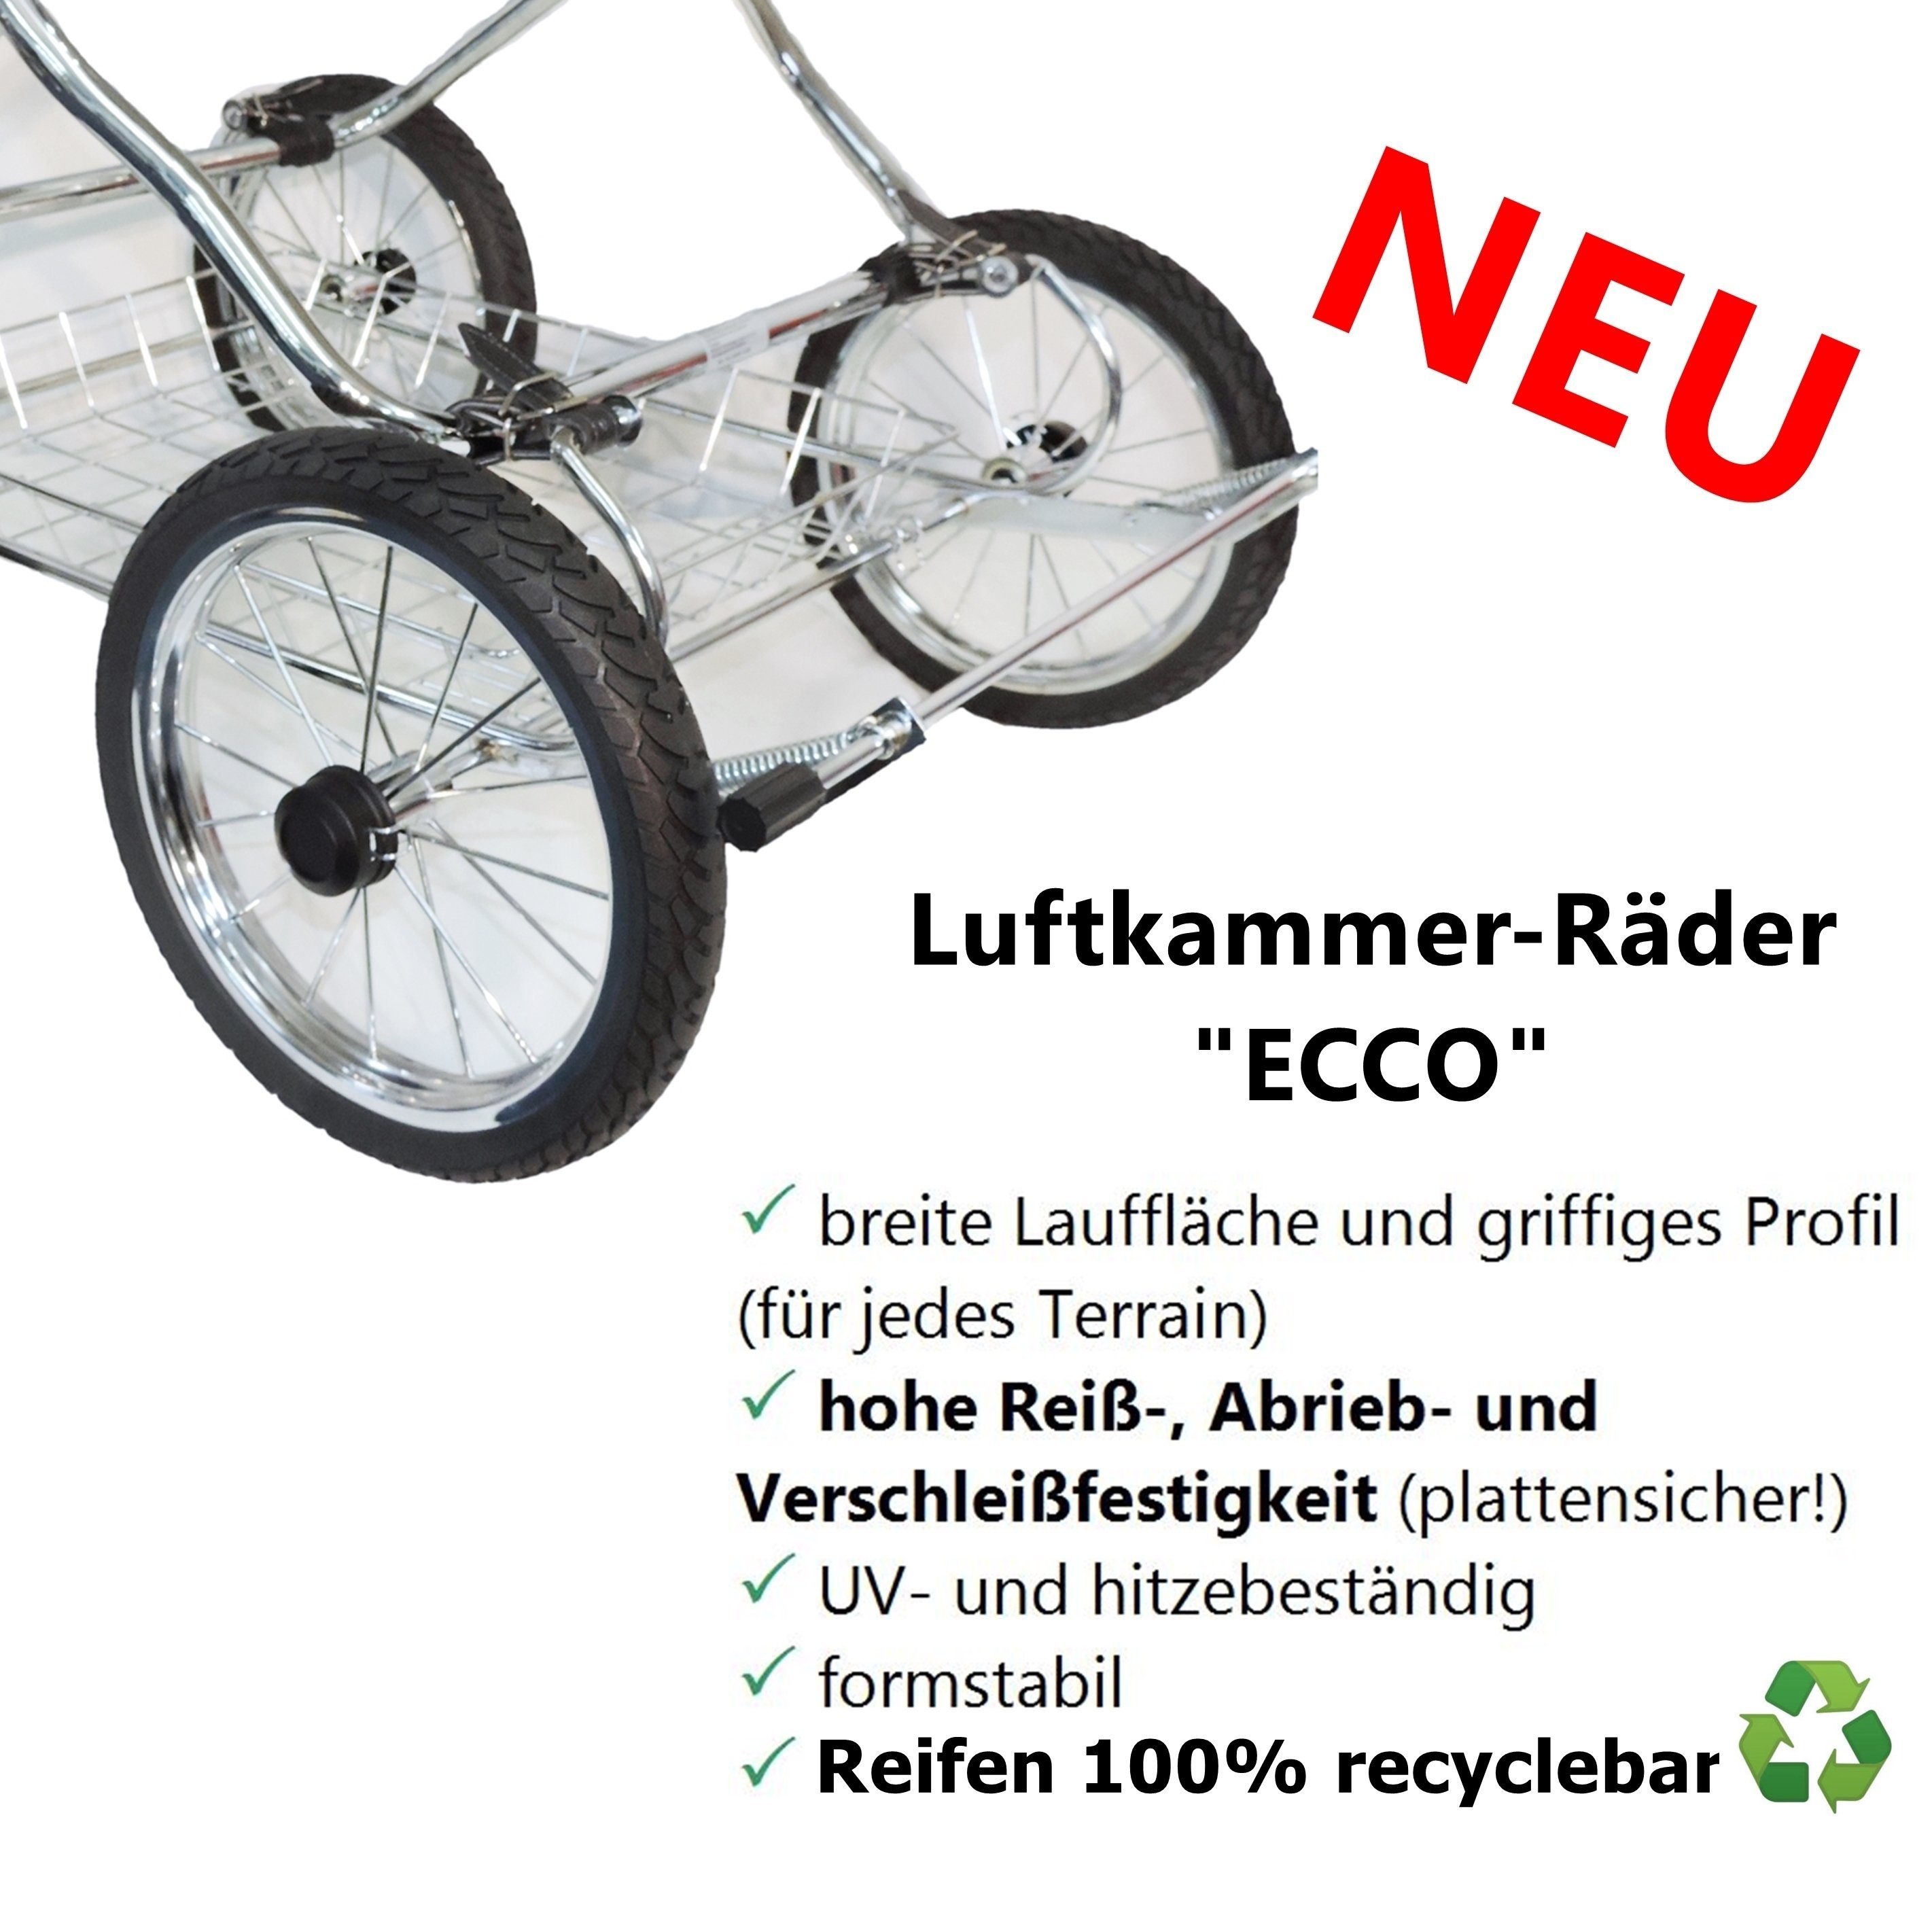 Komponenten mit alle - schwarz Designer-ECO, recyclebarer EU Kinderwagen made Sport-Kinderwagen in Eichhorn Luftkammerbereifung